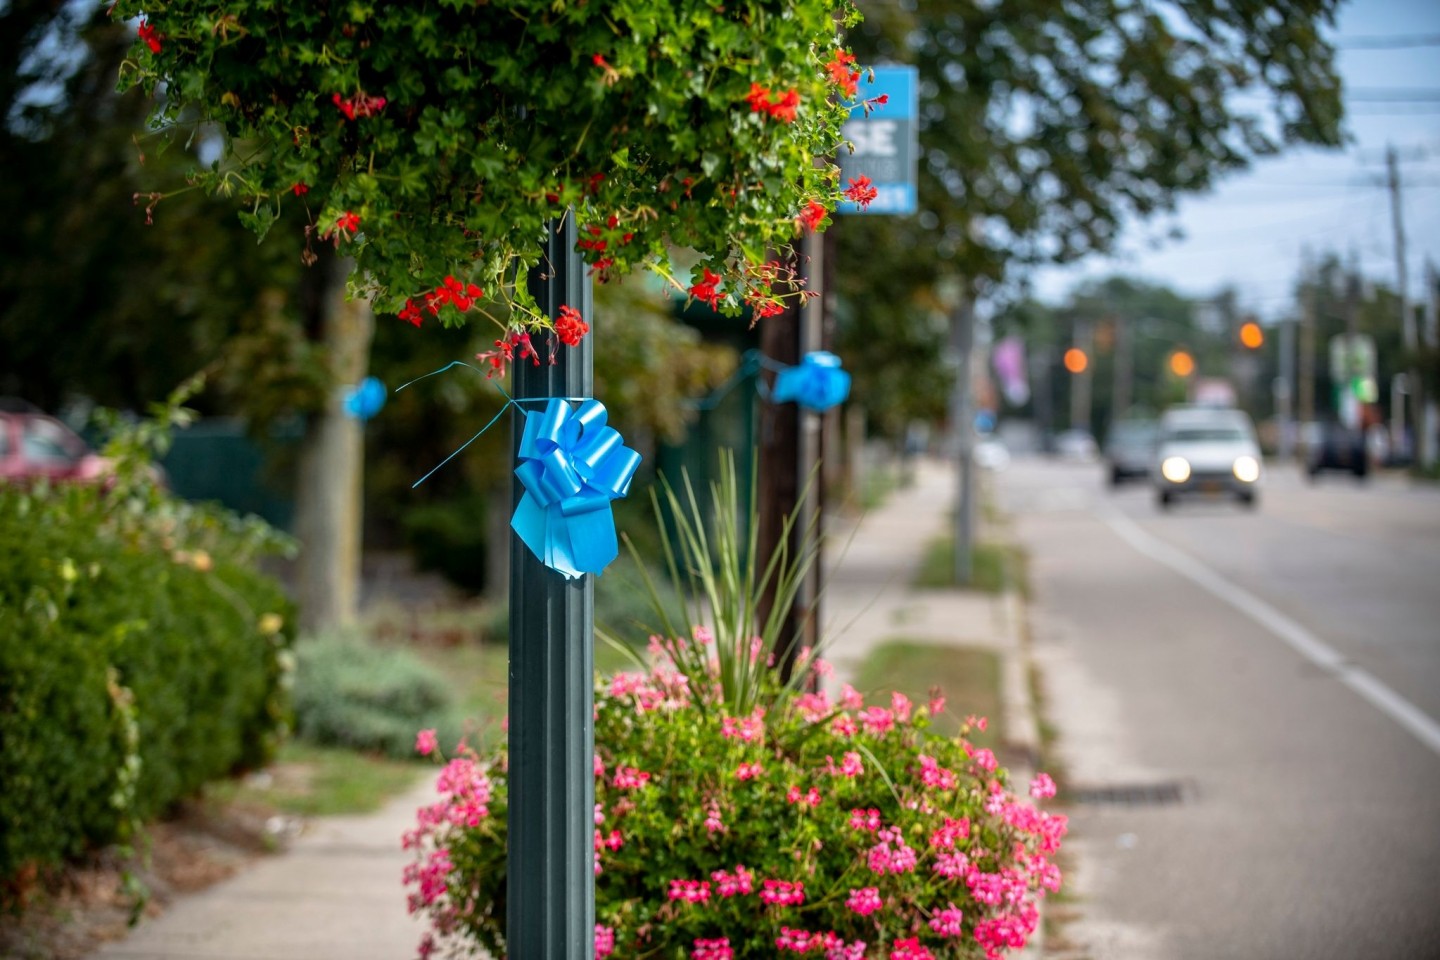 Blaue Schleifen hängen zum Gedenken an Gabby Petito in ihrer Heimatstadt Blue Point.